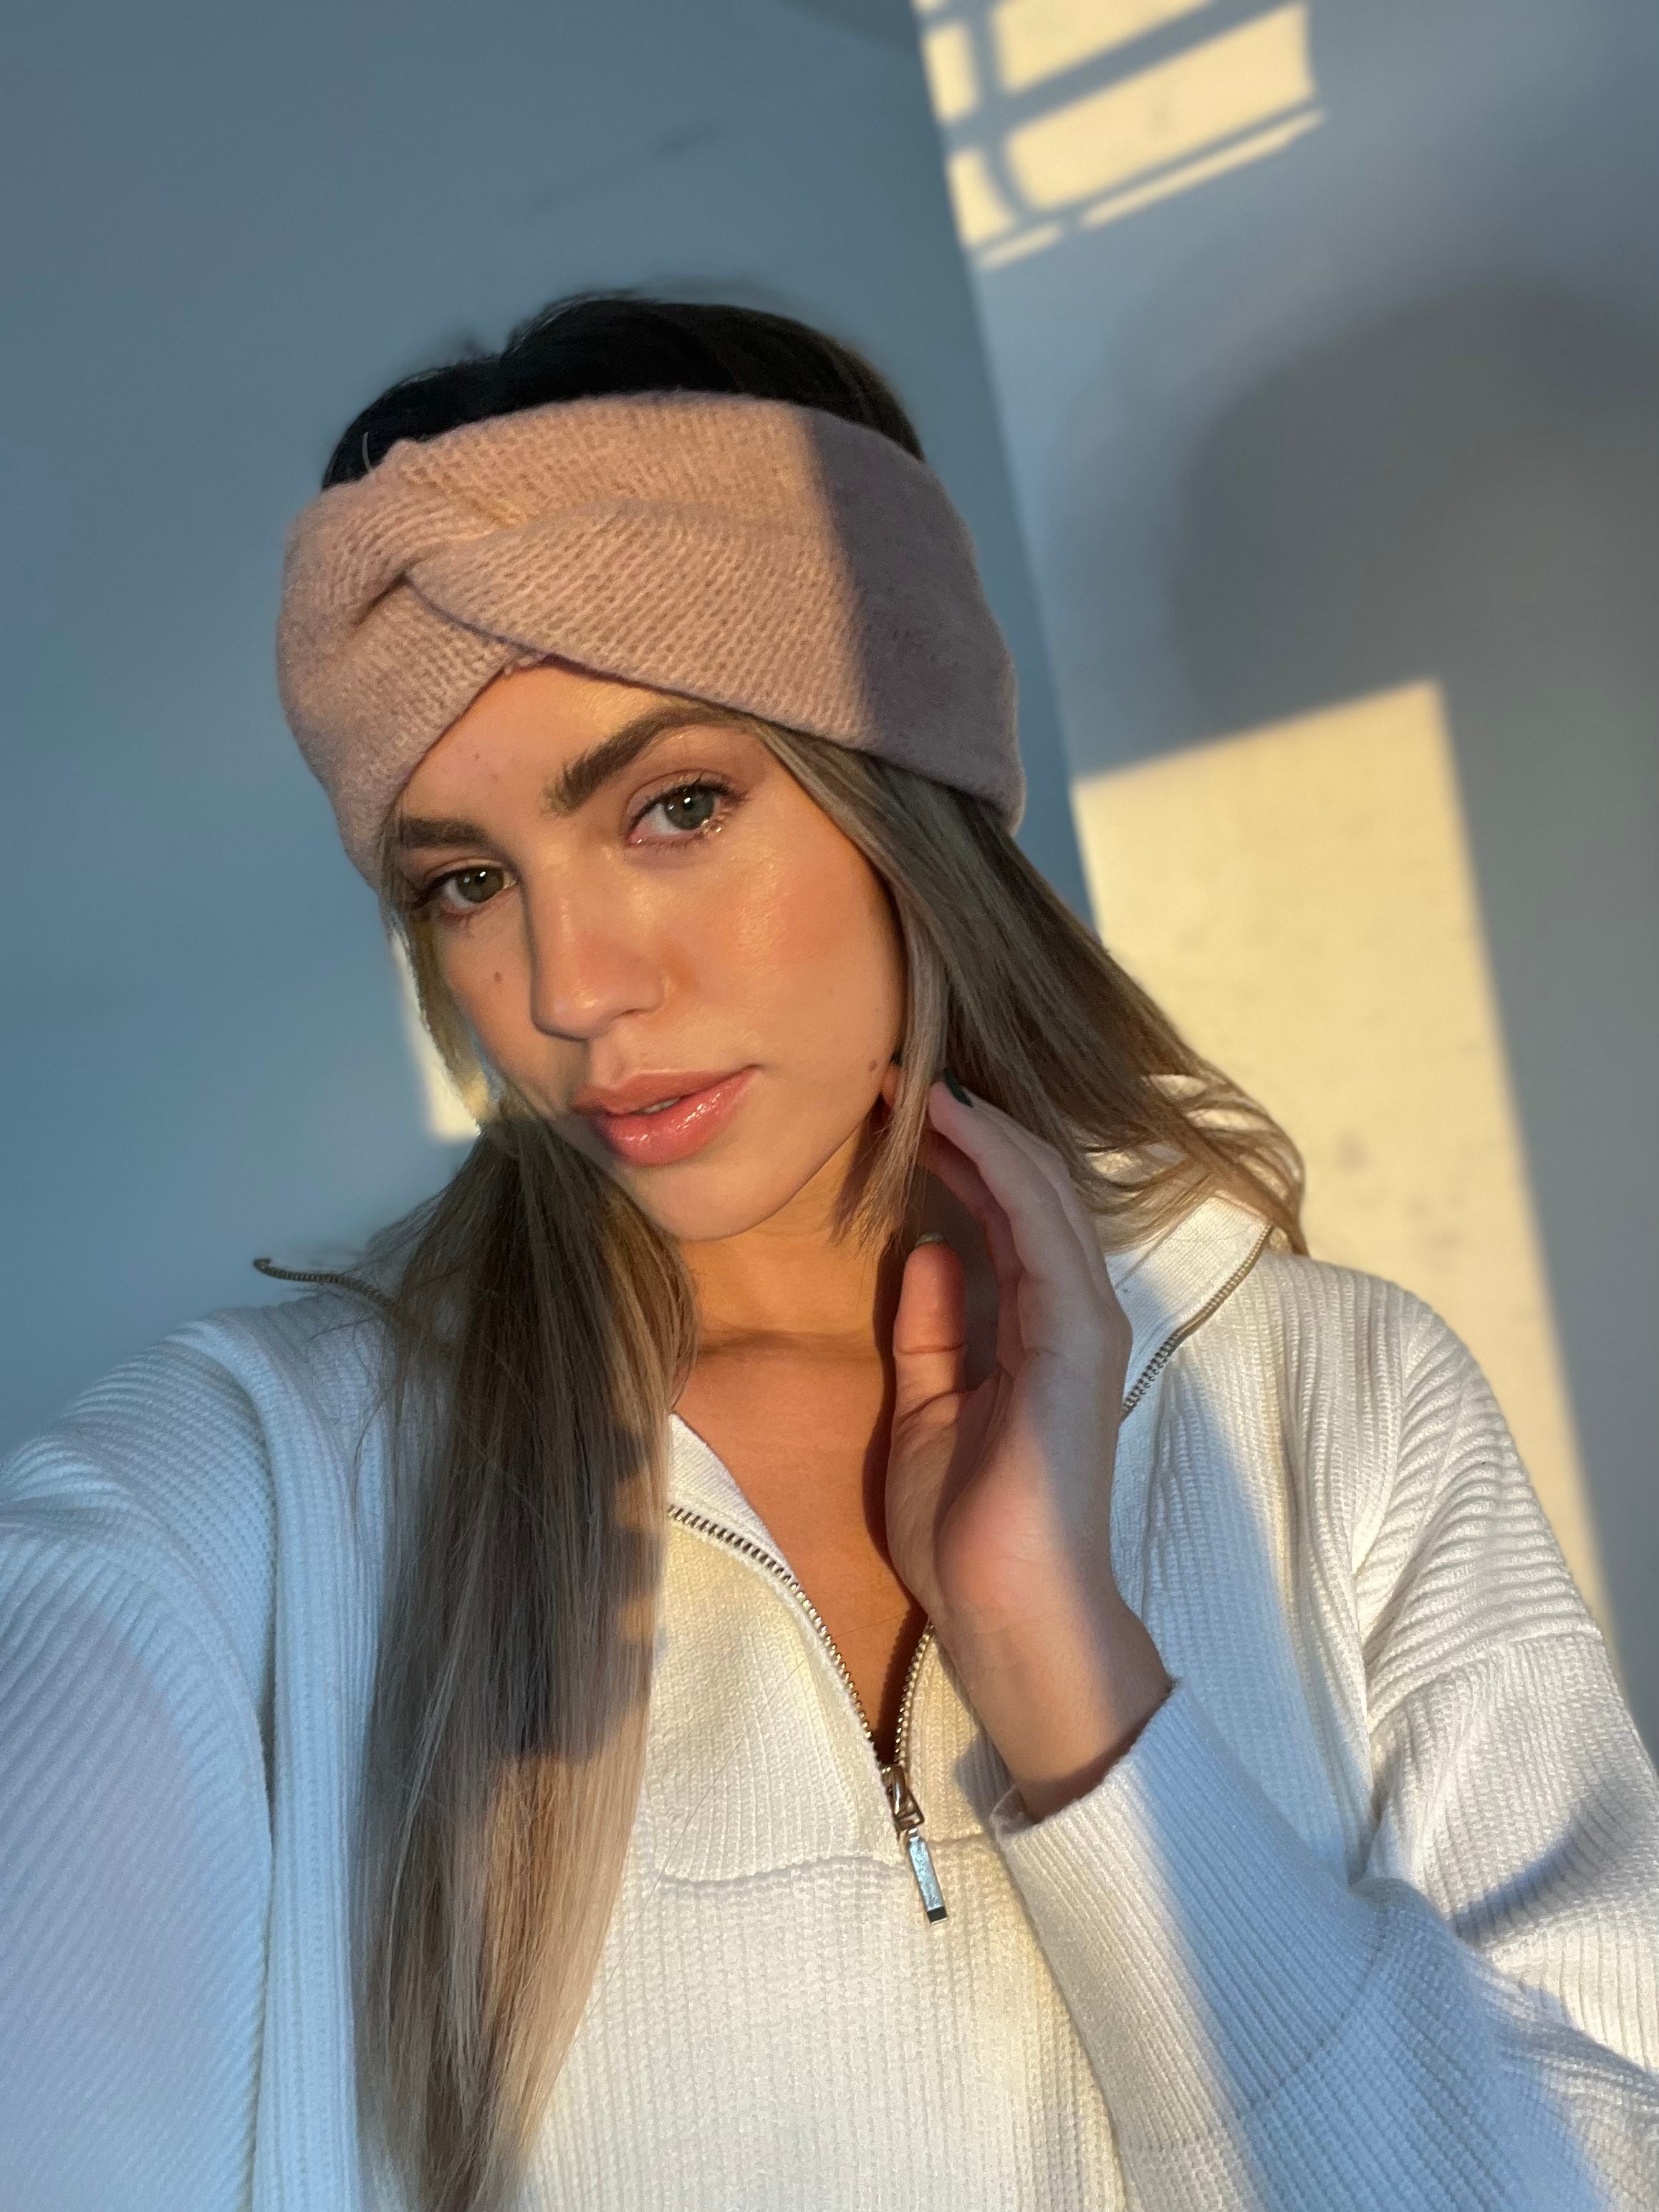 Daniella Knitted Headband / Blush